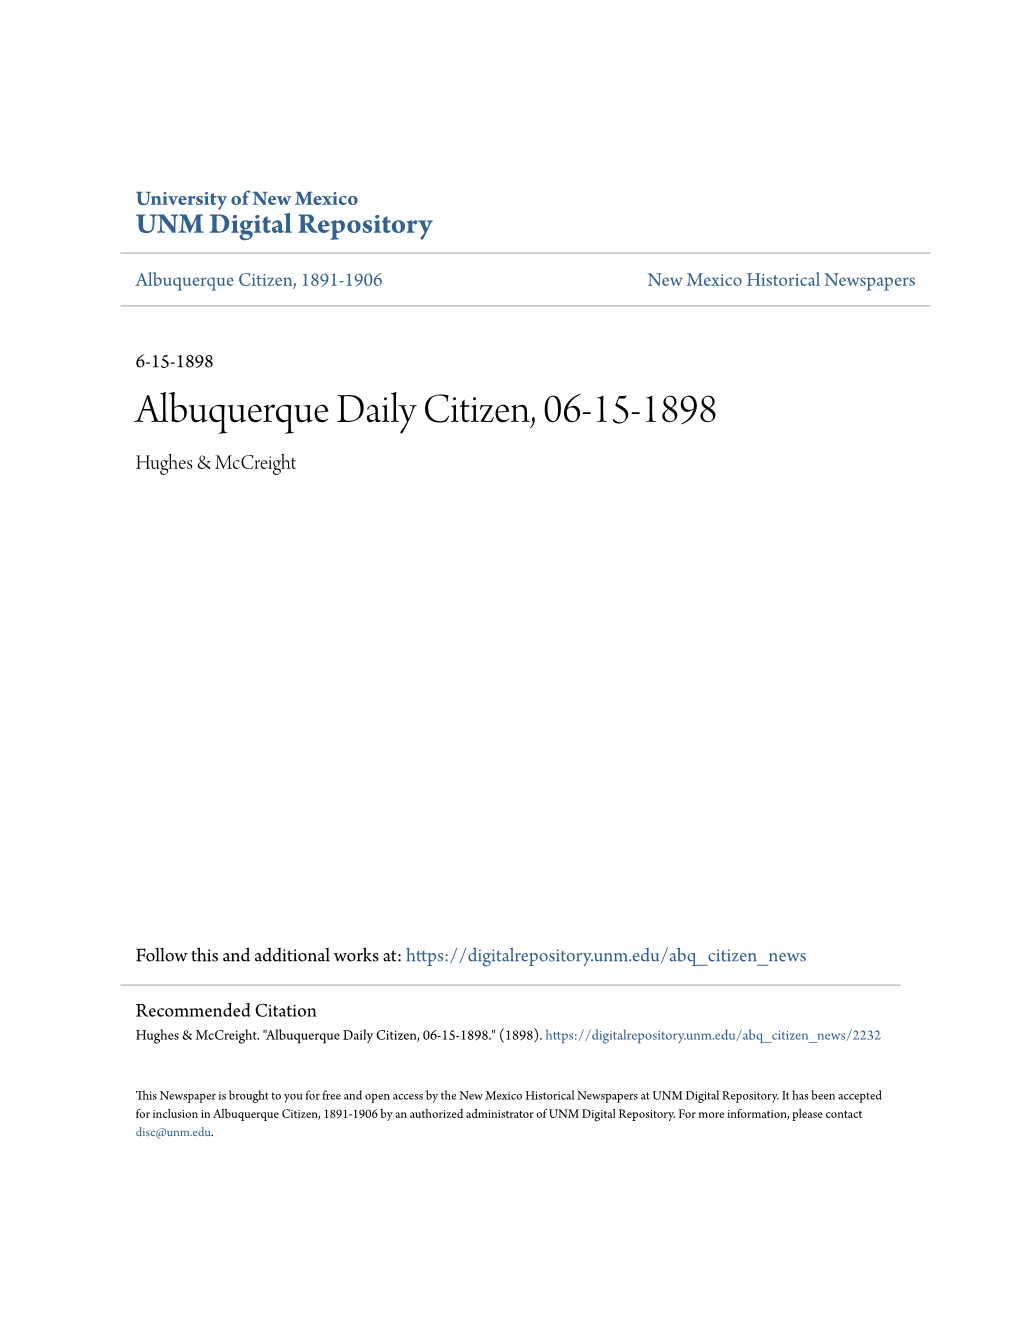 Albuquerque Daily Citizen, 06-15-1898 Hughes & Mccreight